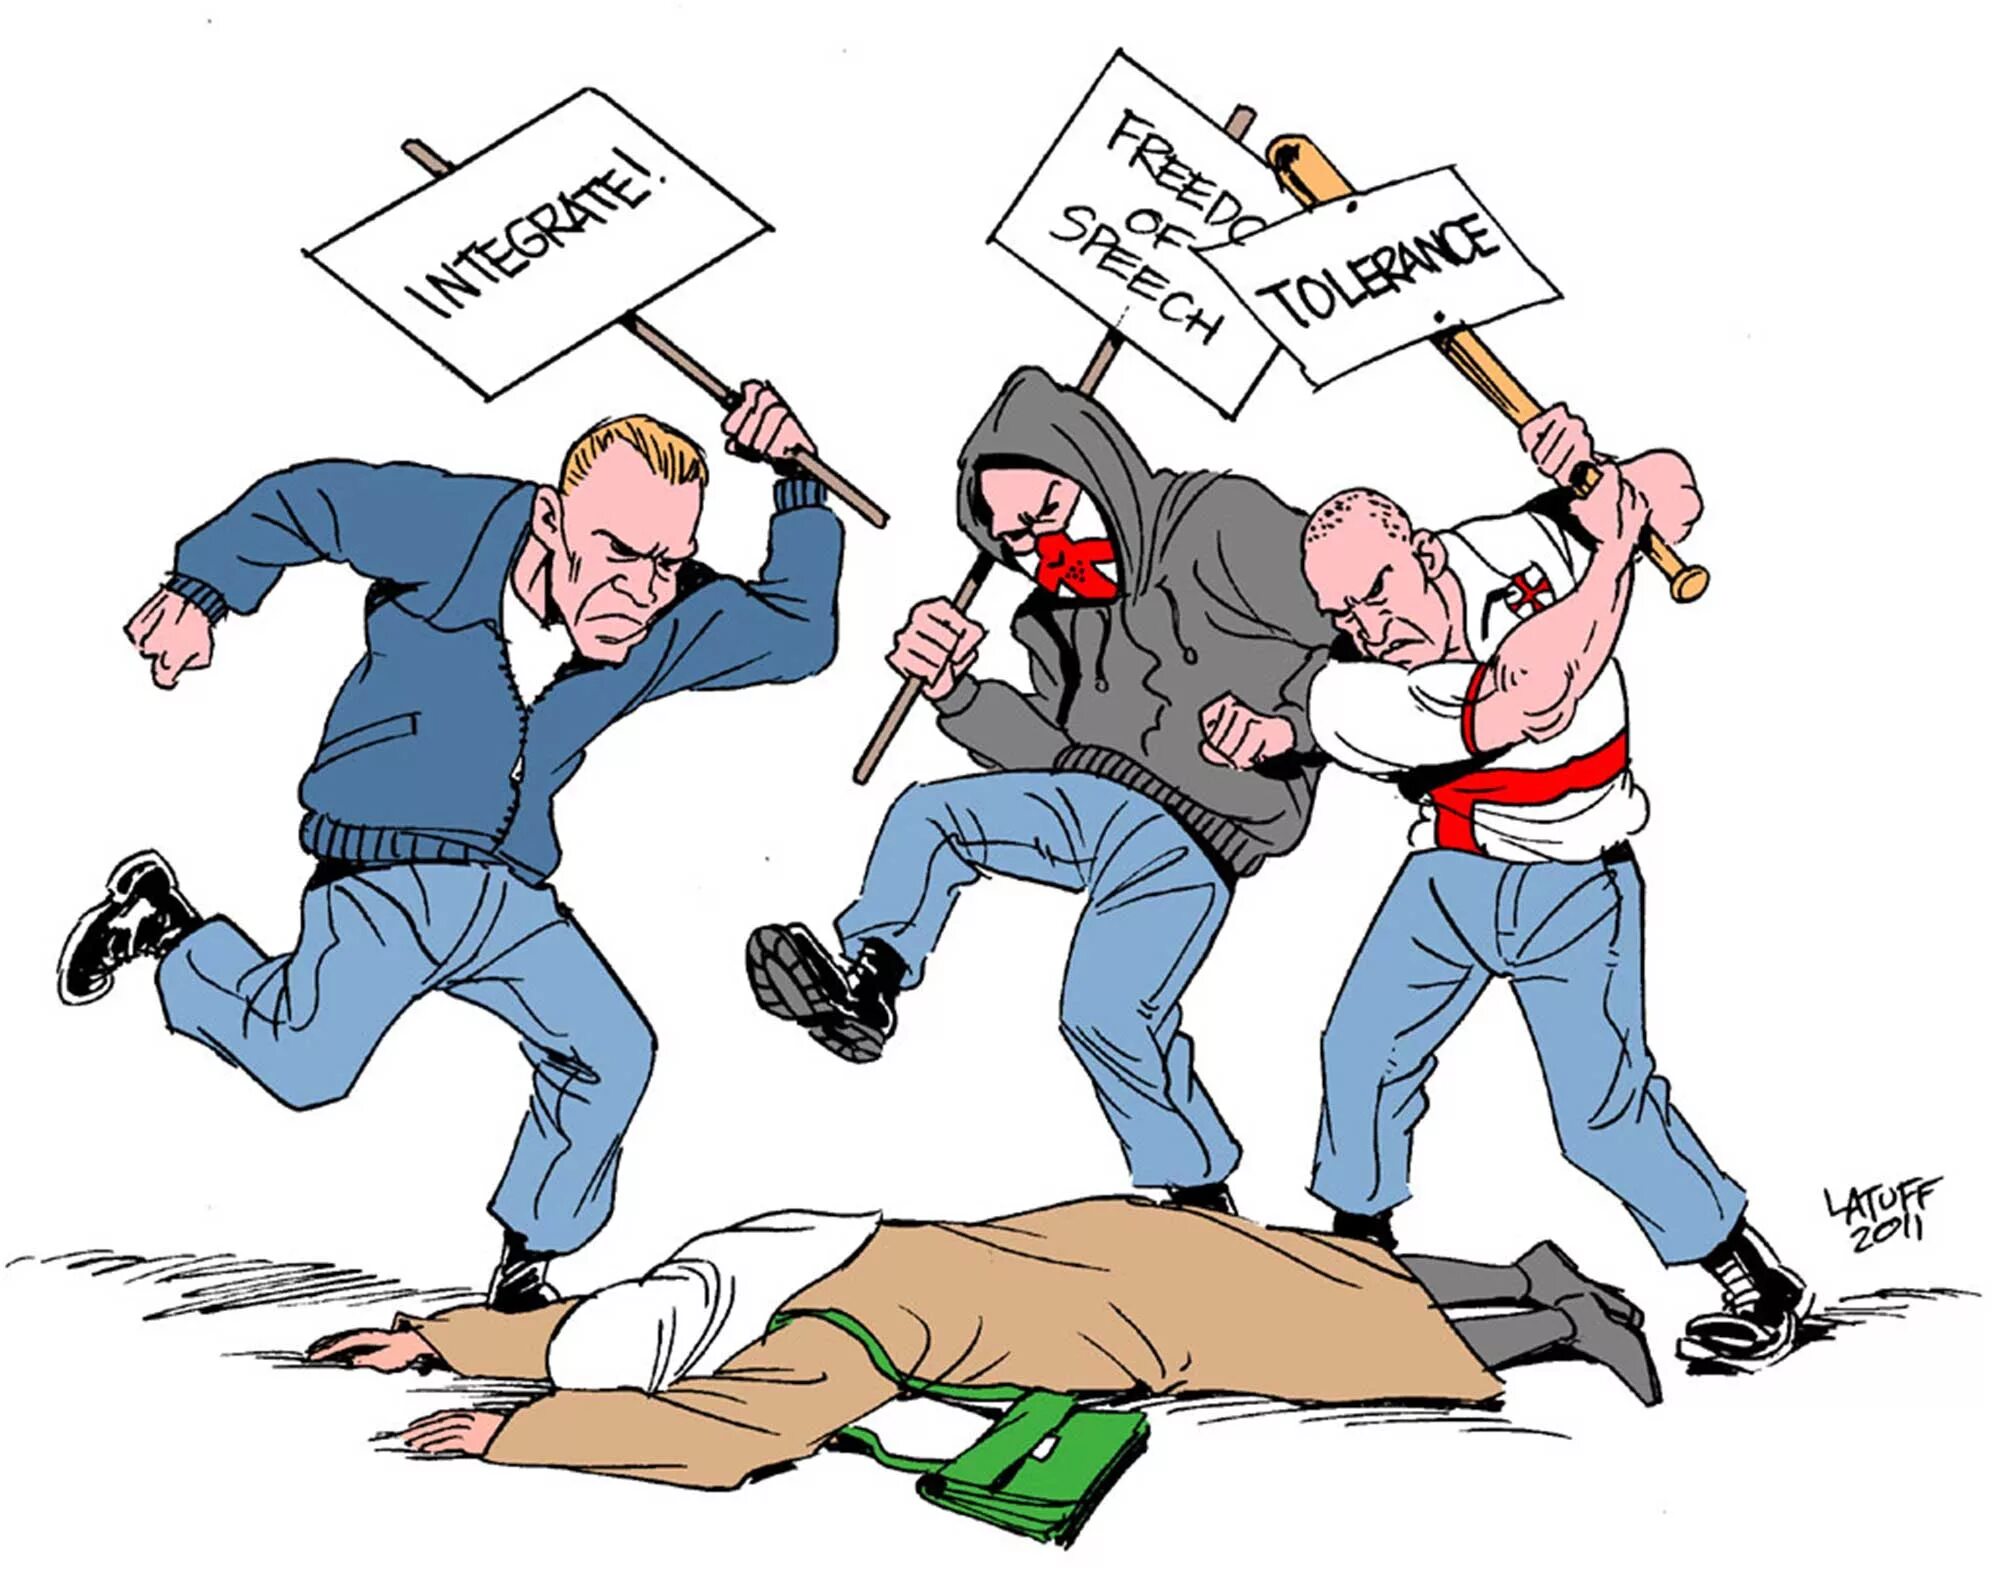 У терроризма есть национальность. Религиозный конфликт карикатуры. Карикатура против Ислама. Дискриминация карикатура. Преступность карикатура.